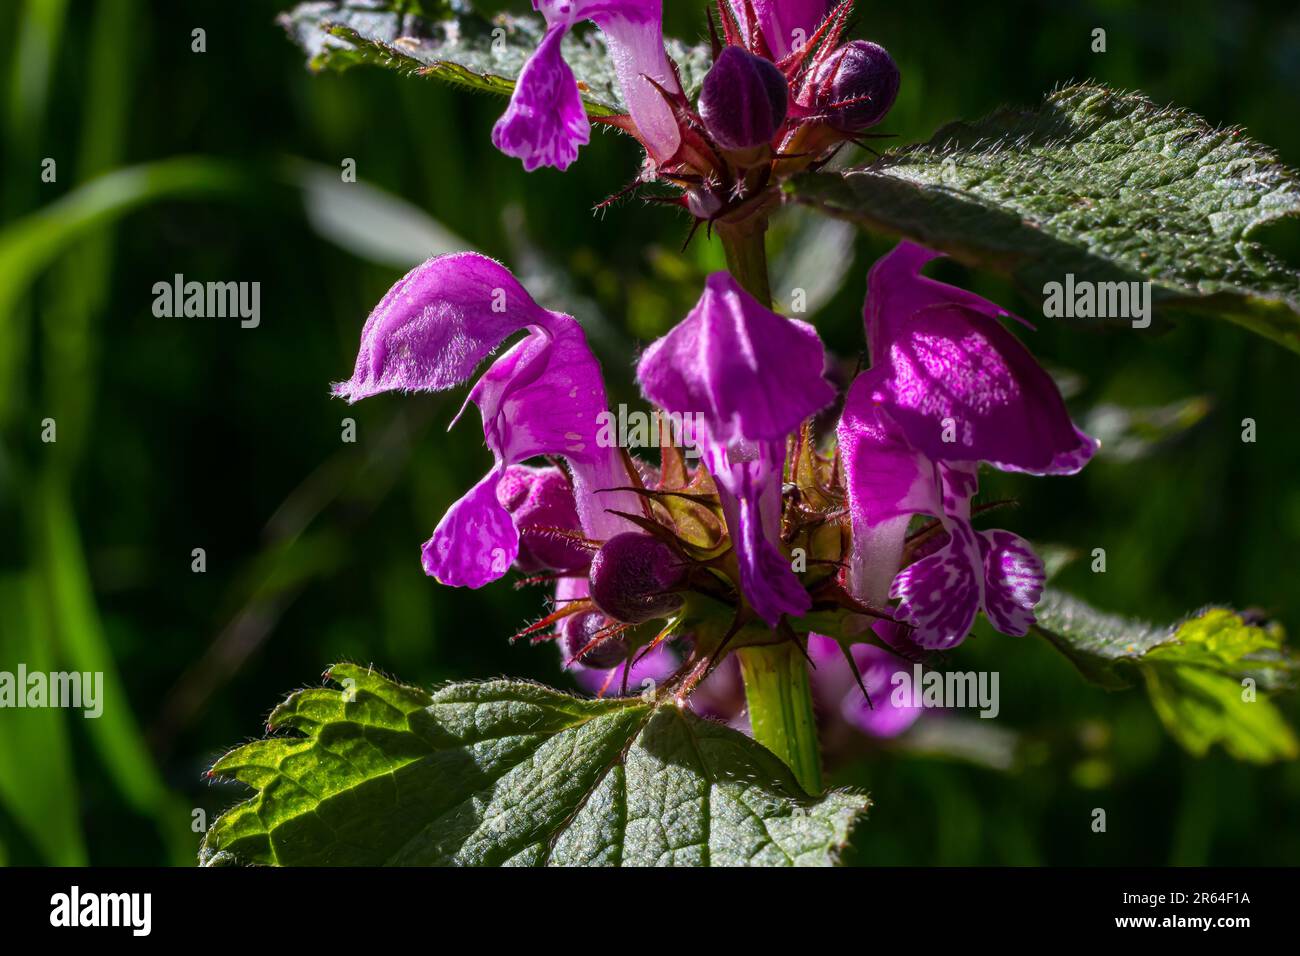 L'ortie sourde fleurit dans une forêt, Lamium purpueum. Fleurs violettes printanières avec des feuilles rapprochées. Banque D'Images